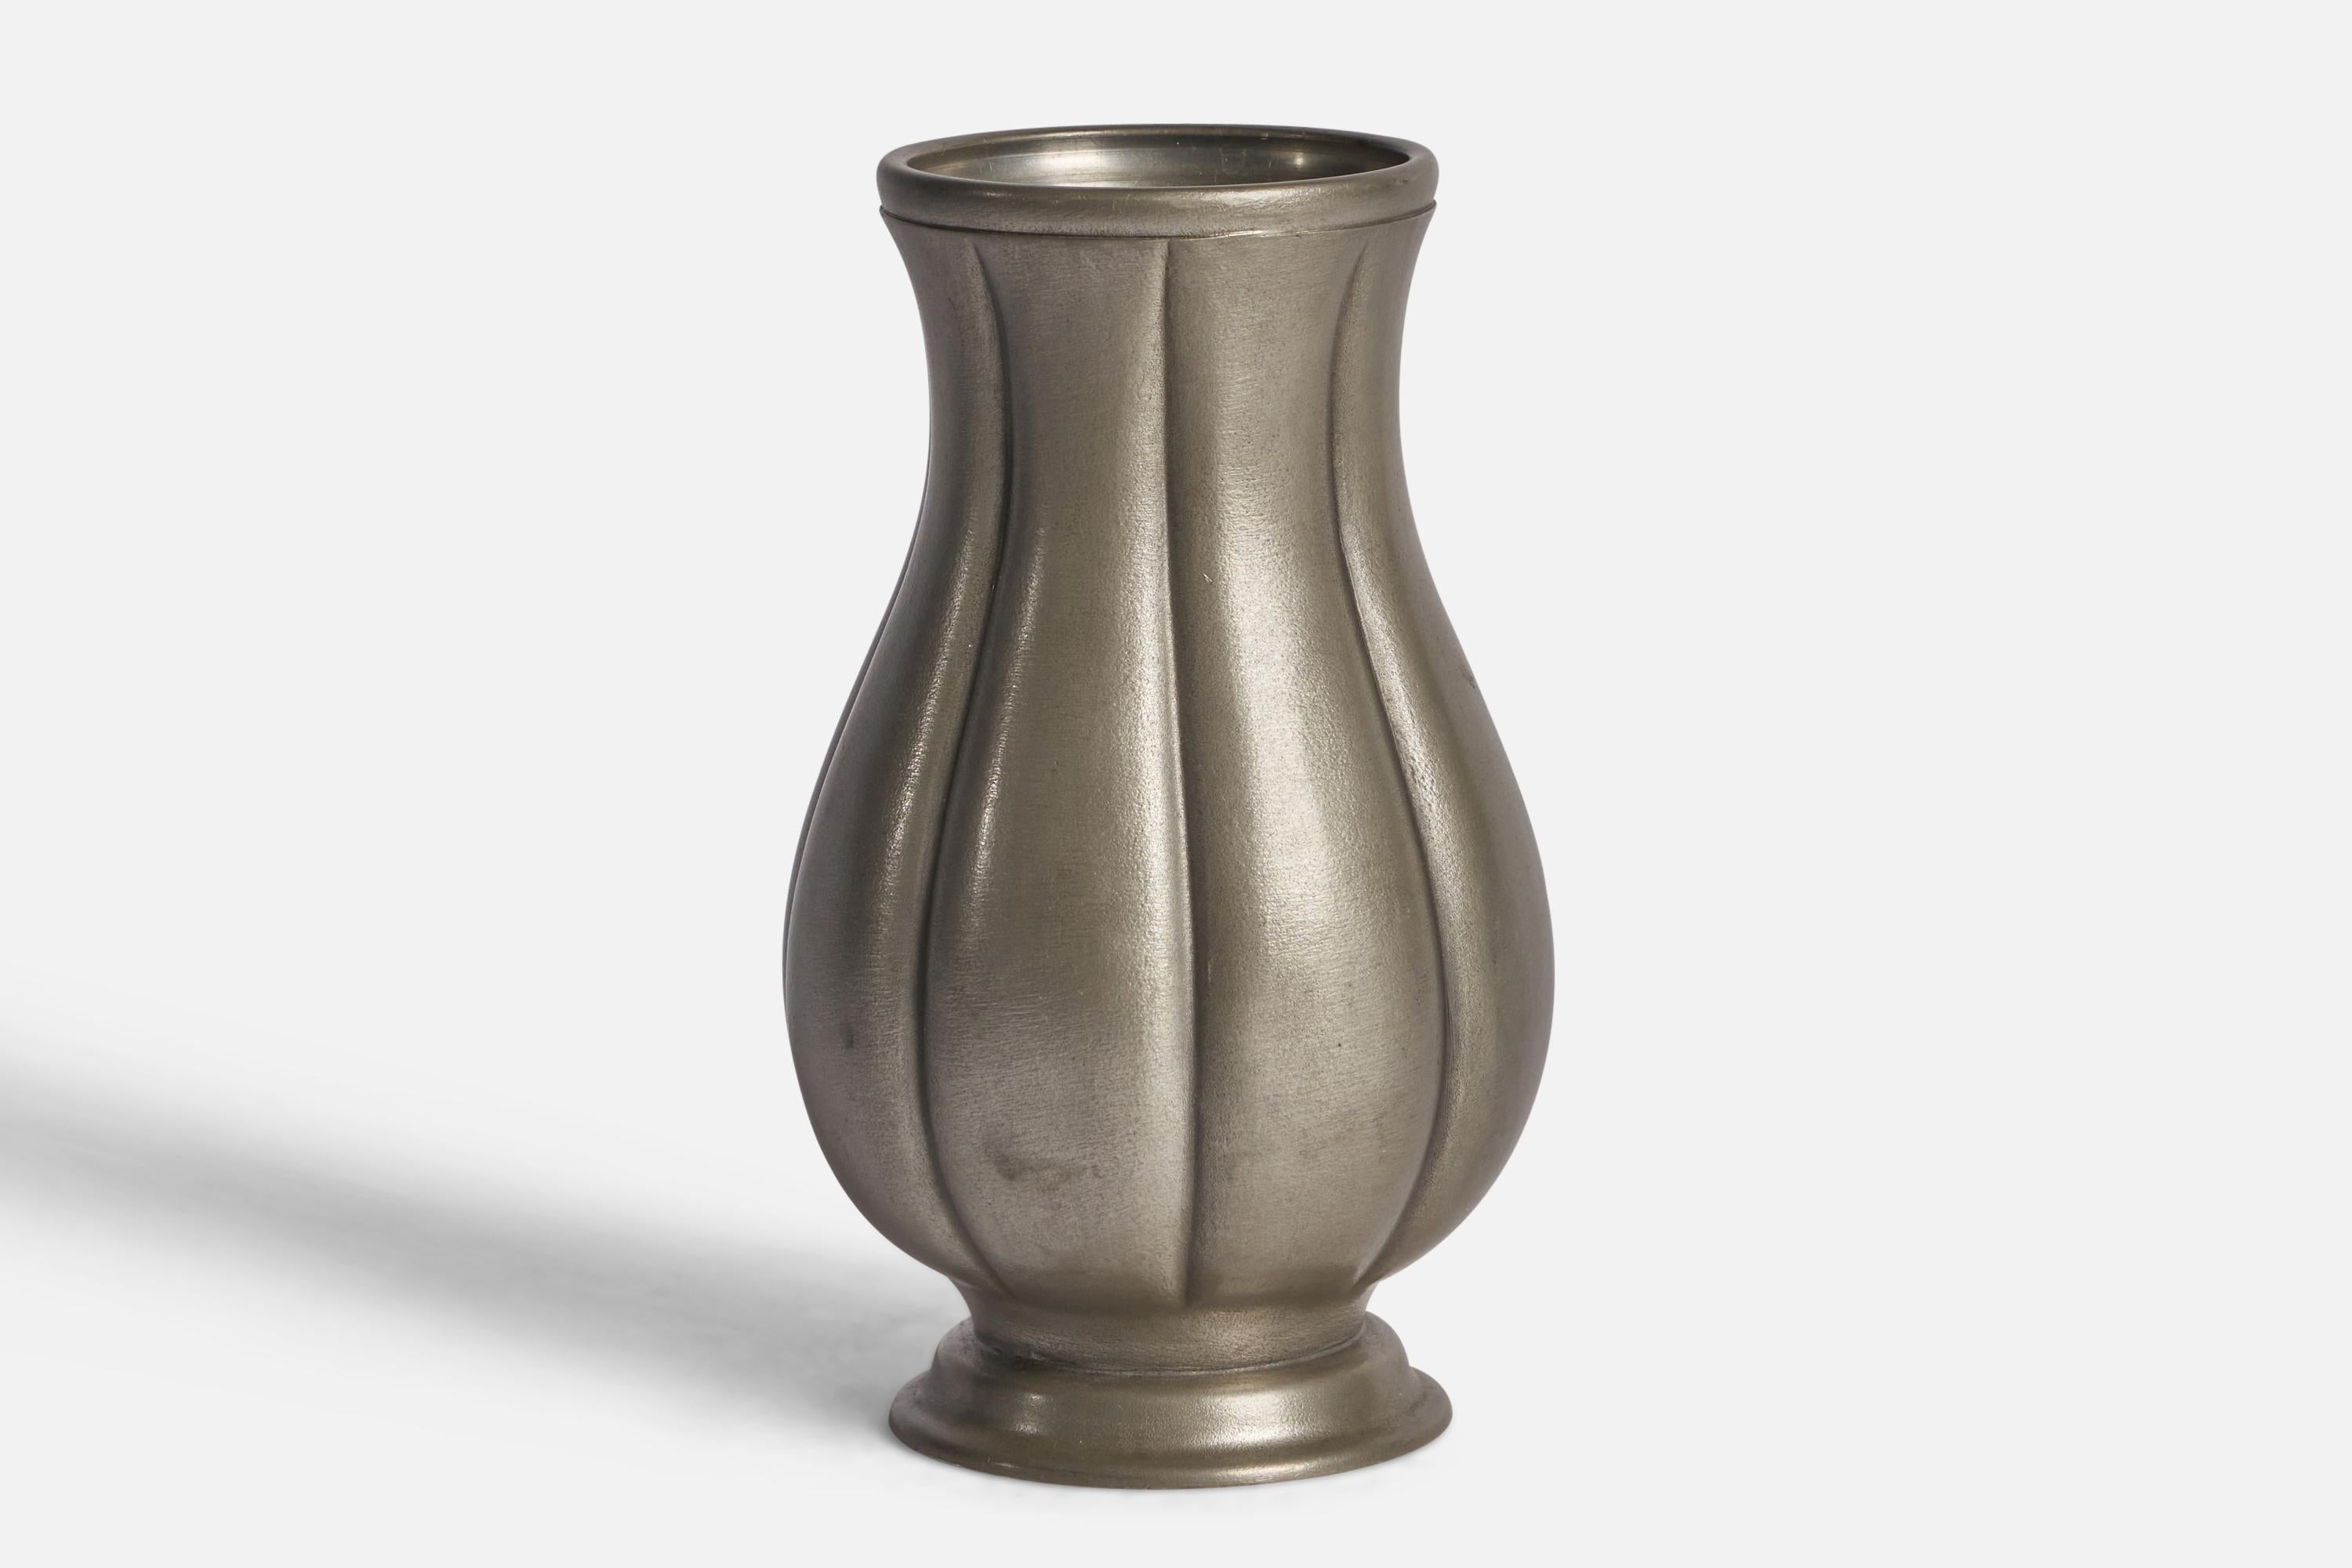 Vase cannelé en étain conçu par Edvin Ollers et produit par Shreuder & Olson, Suède, 1952.

Tampon 